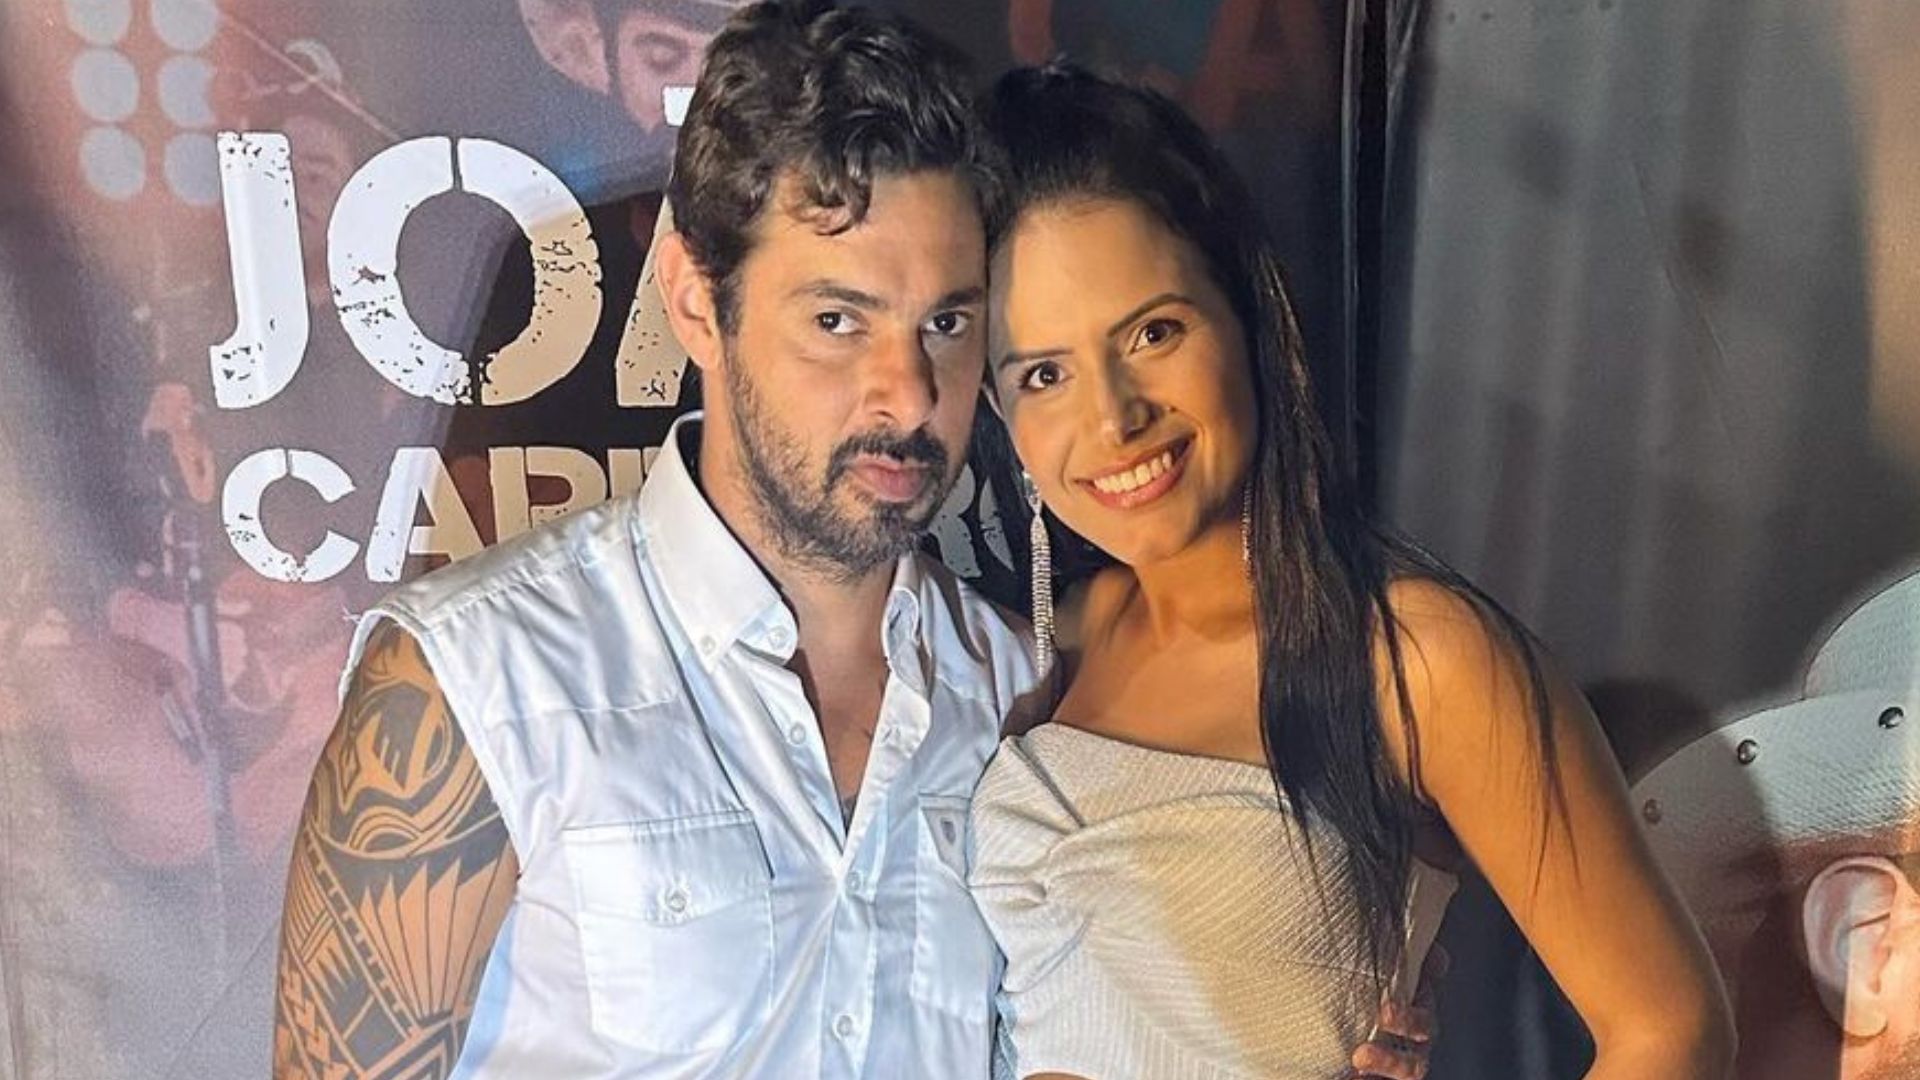 Morre sertanejo João Carreiro, aos 41 anos, após procedimento e esposa se manifesta